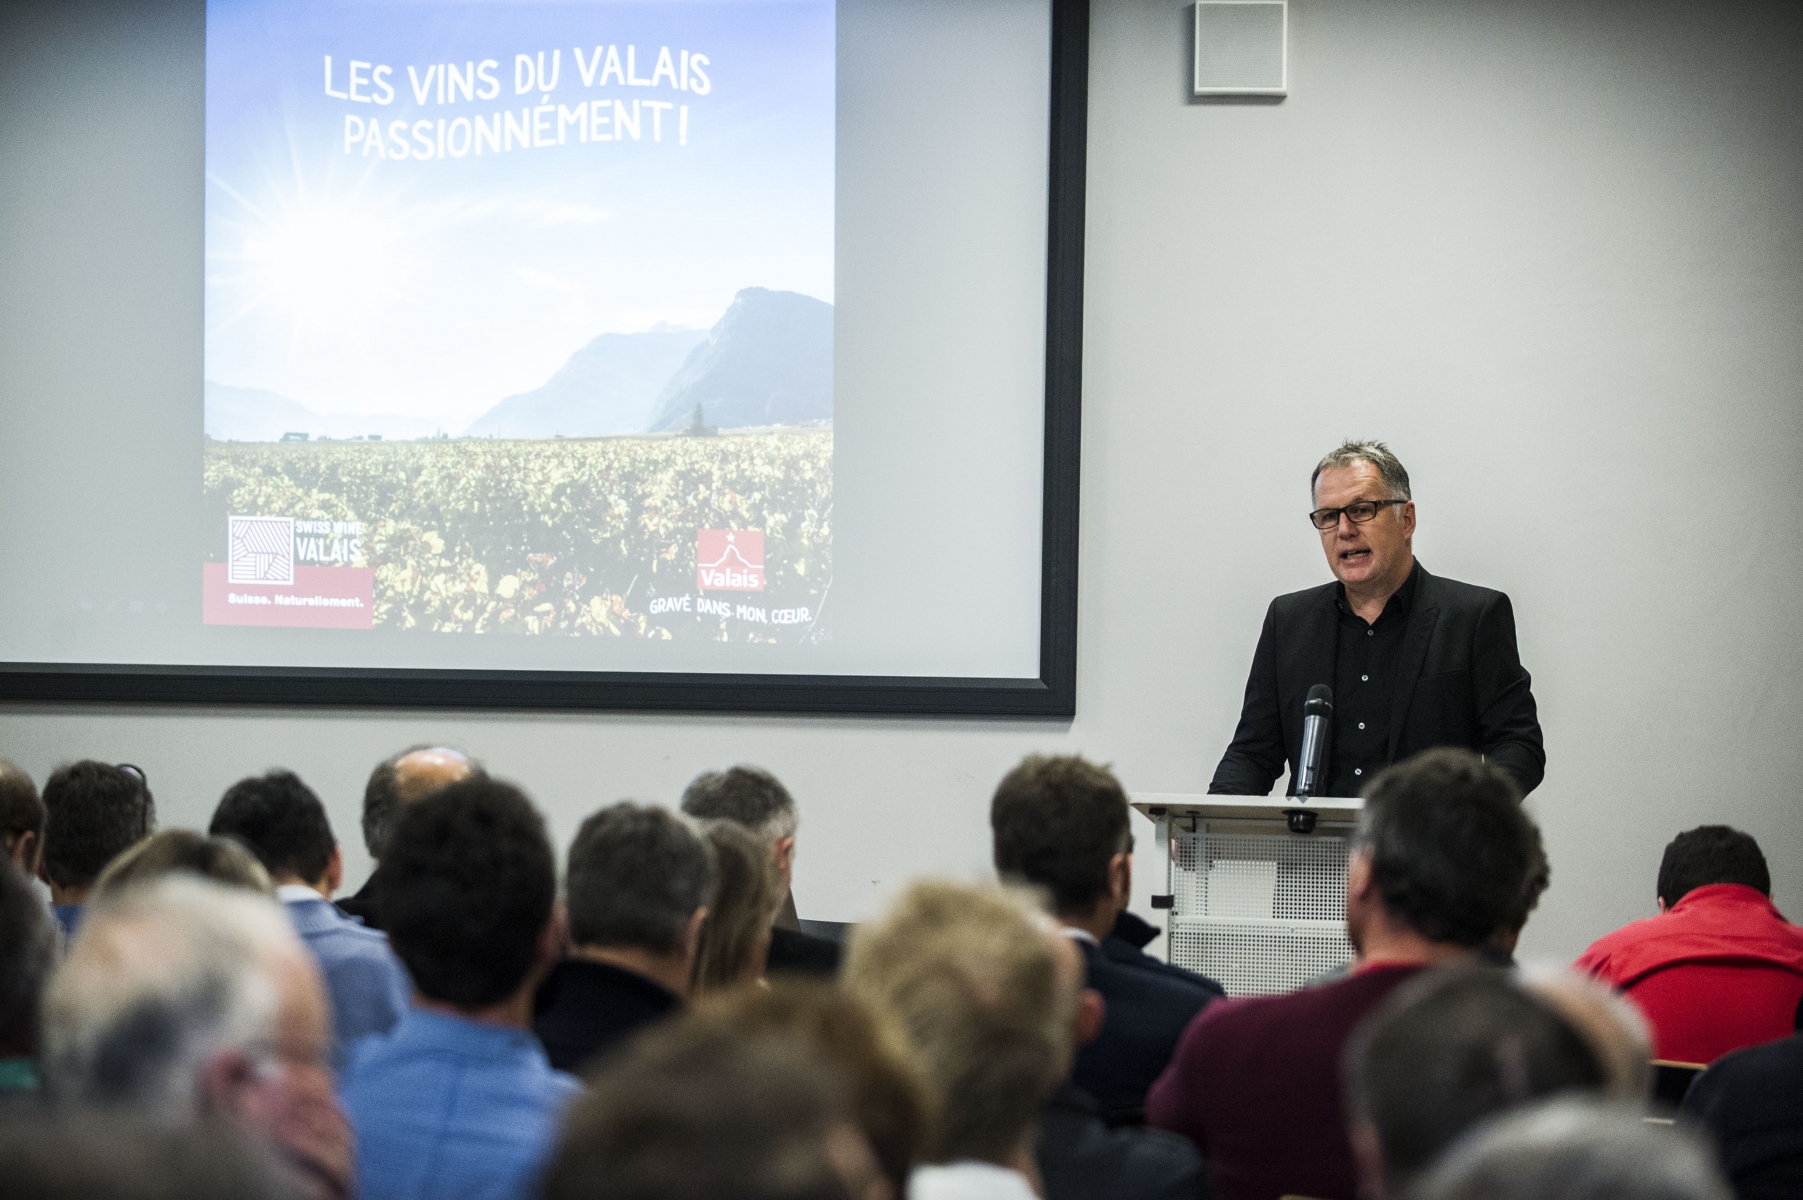 Gérard-Philippe Mabillard et l'IVV veulent améliorer l'image des vins du Valais